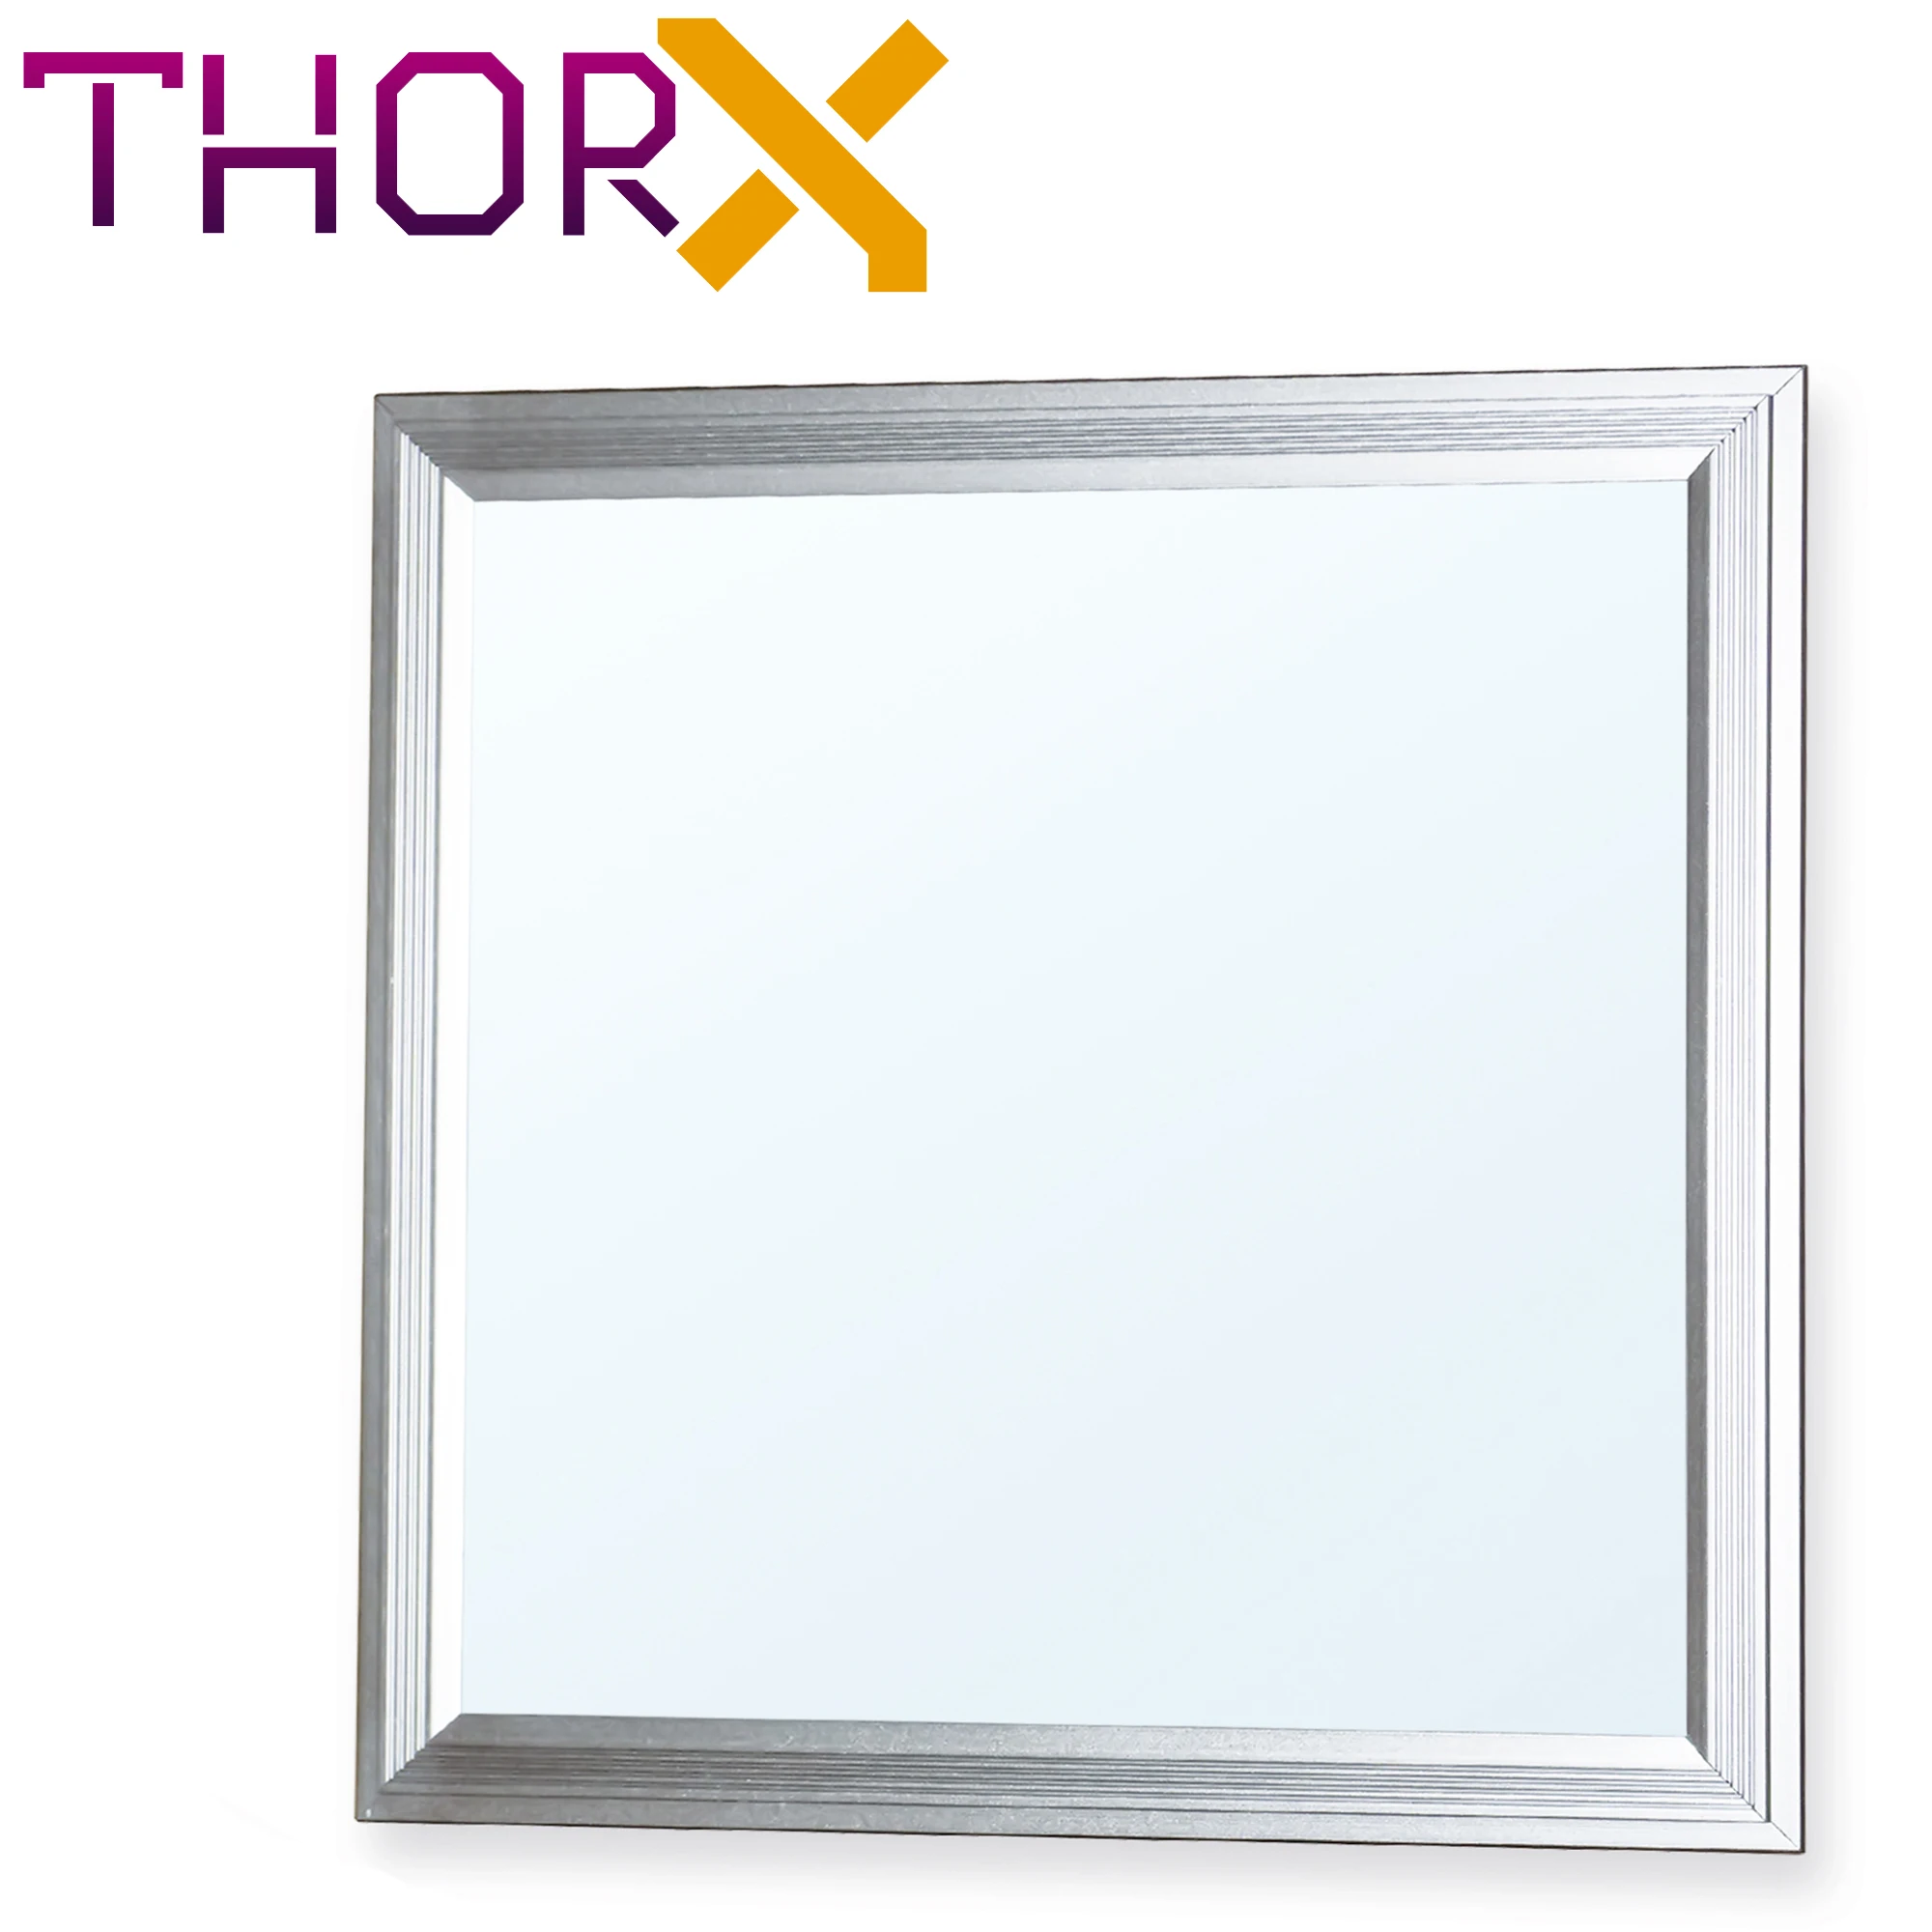 ThorX 30x30 см ультратонкий Светодиодный Панель-10 Вт, 800Lm потолочный светильник светодиодный драйвер 100-240V Холодный/теплый белый/нейтральный комментарий, Япония, Корея, быстрая